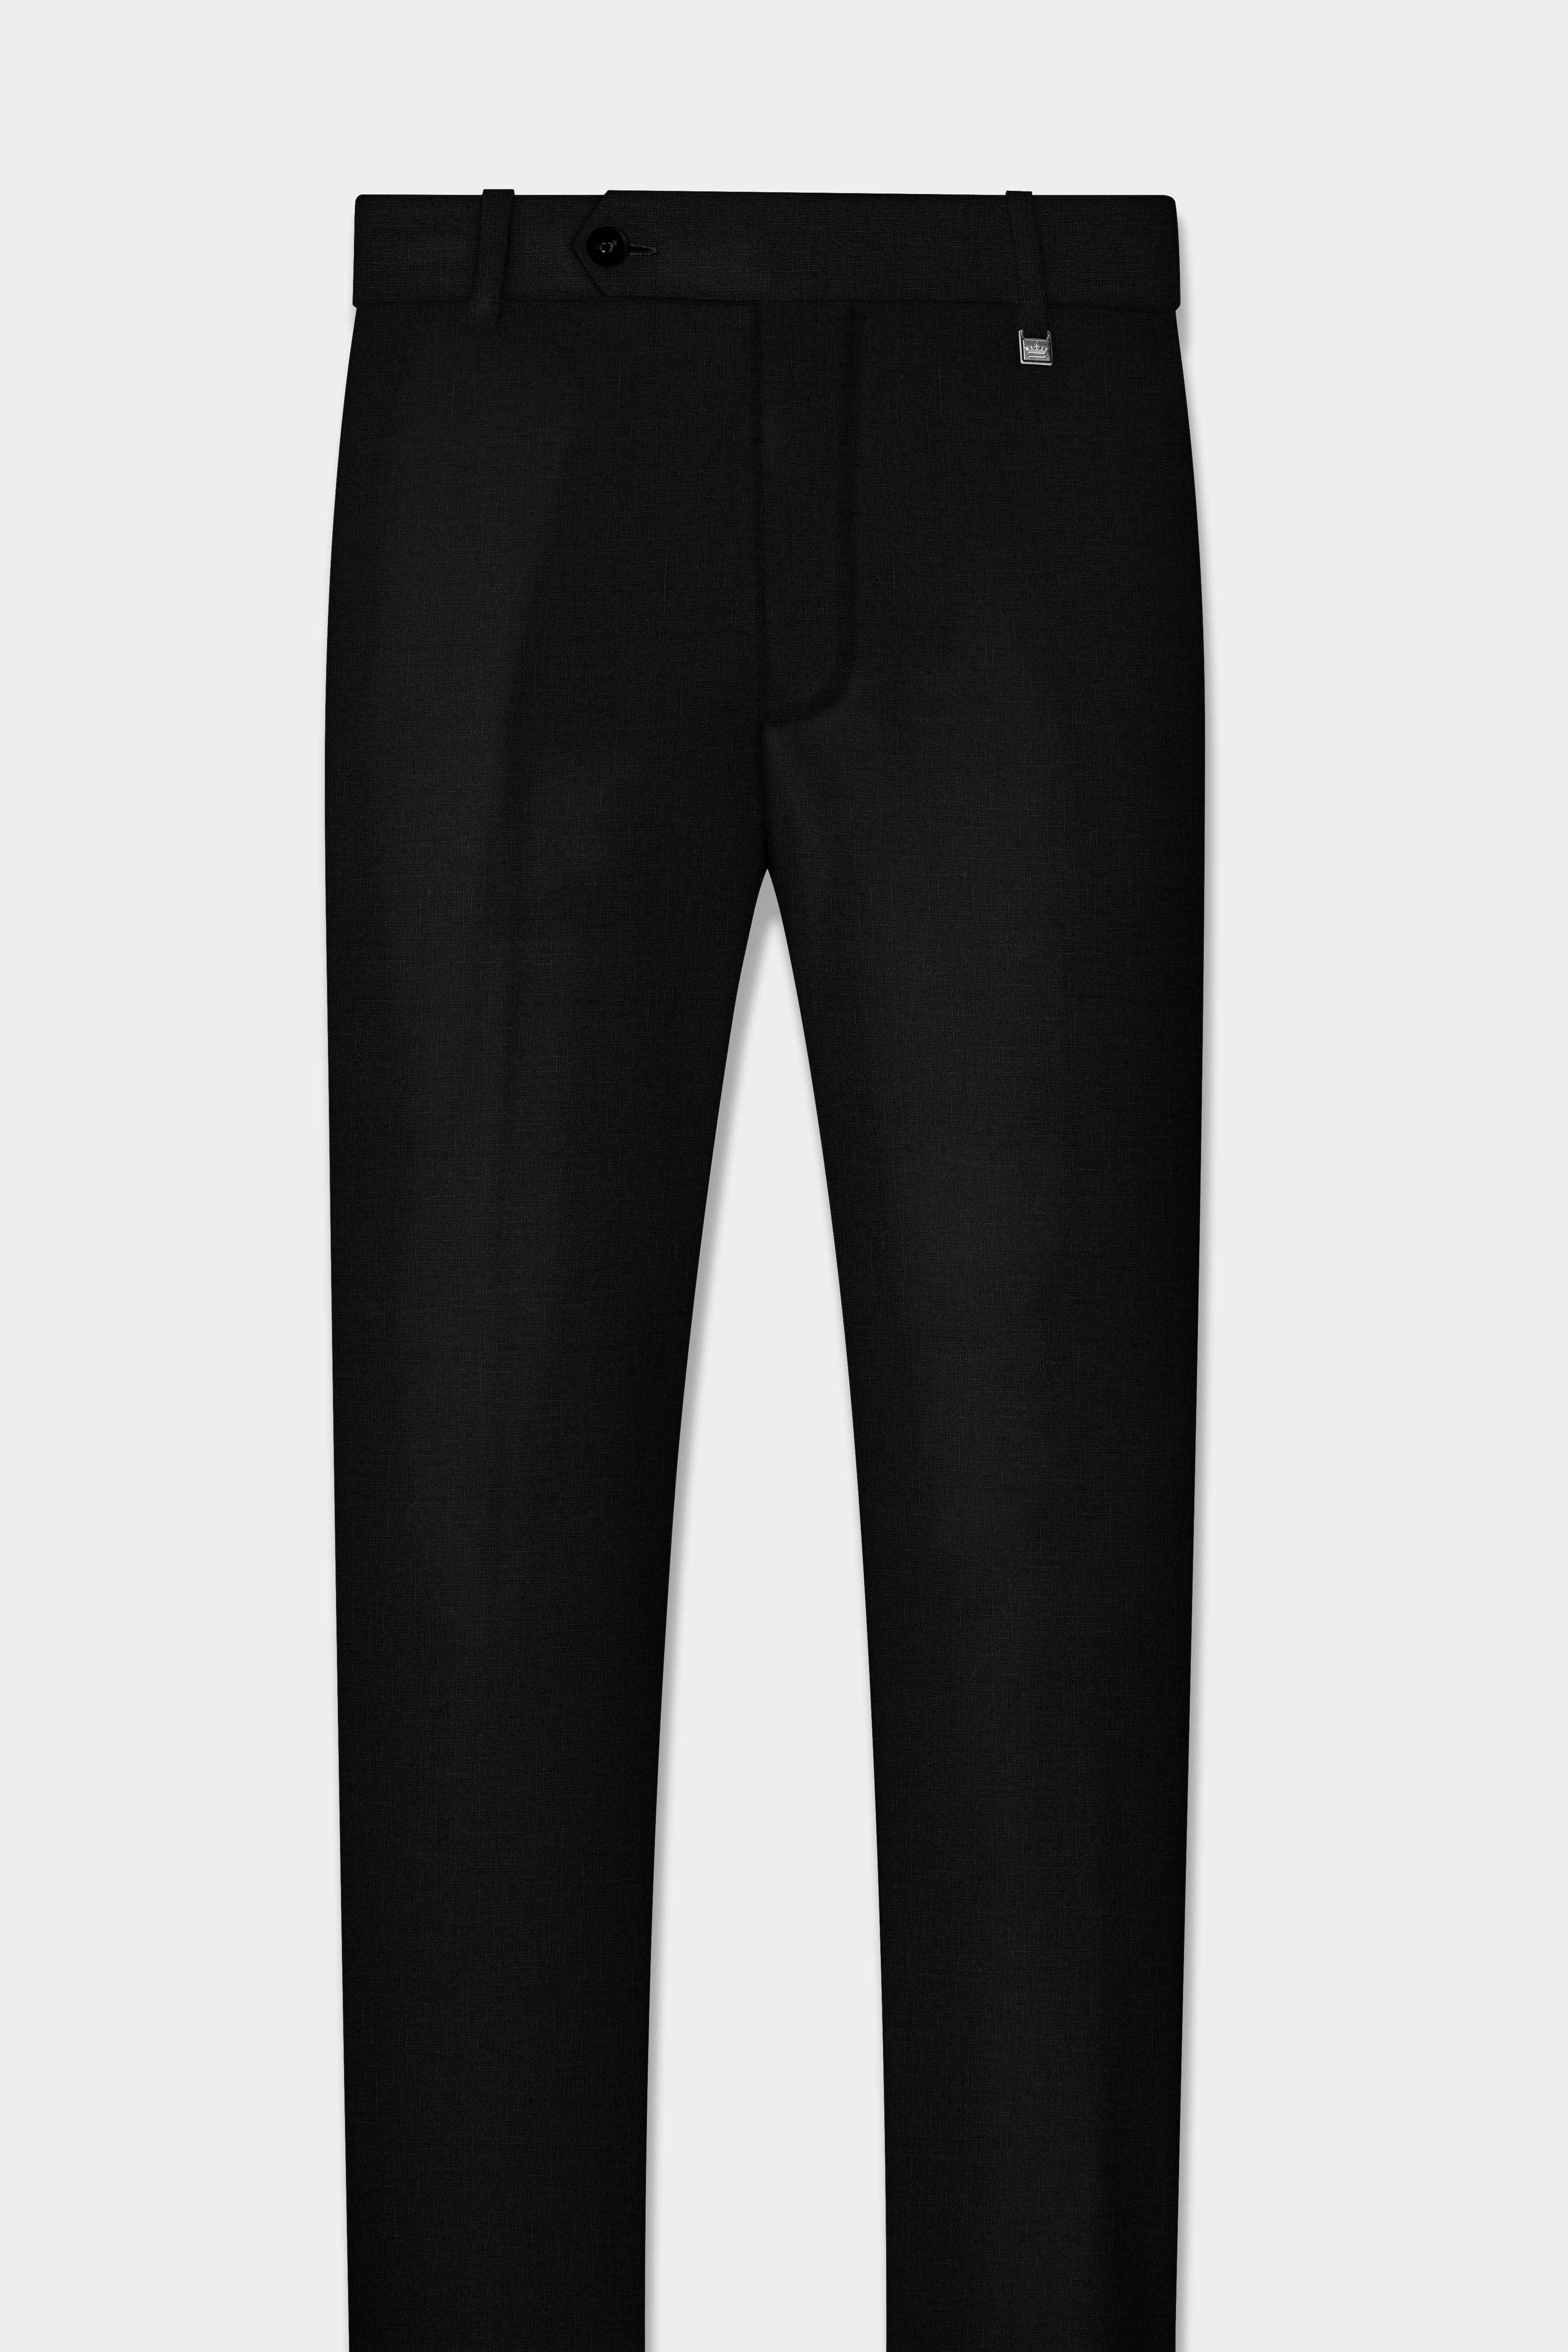 Jade Black Solid Tweed Pant